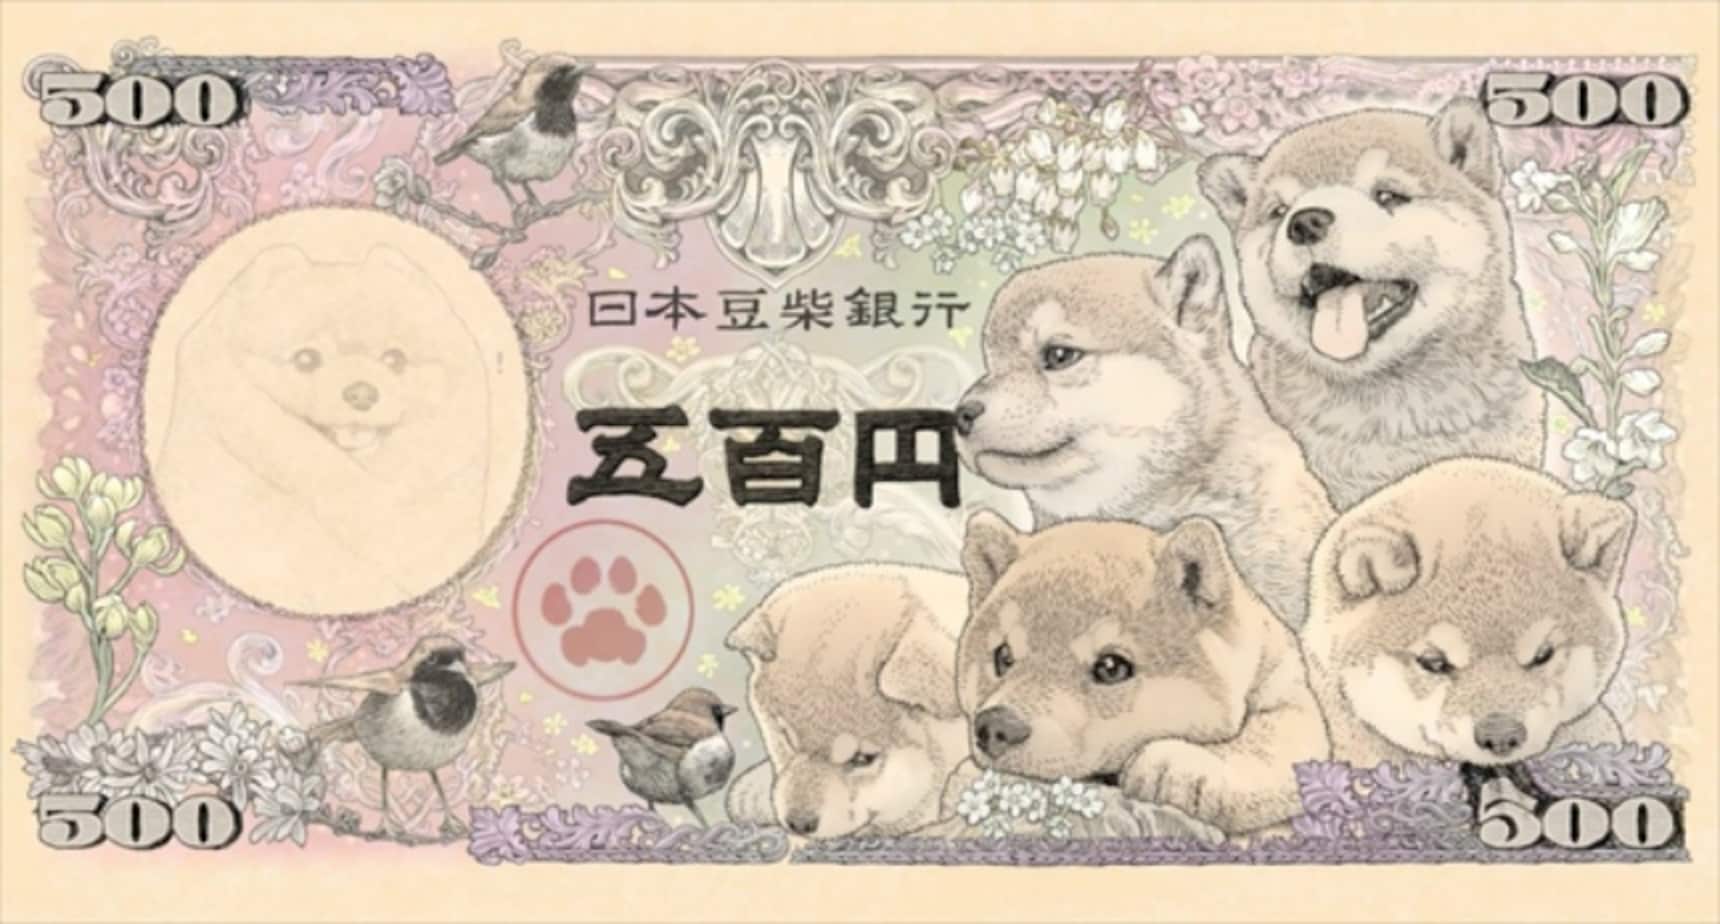 Adorable Mame Shiba Banknotes